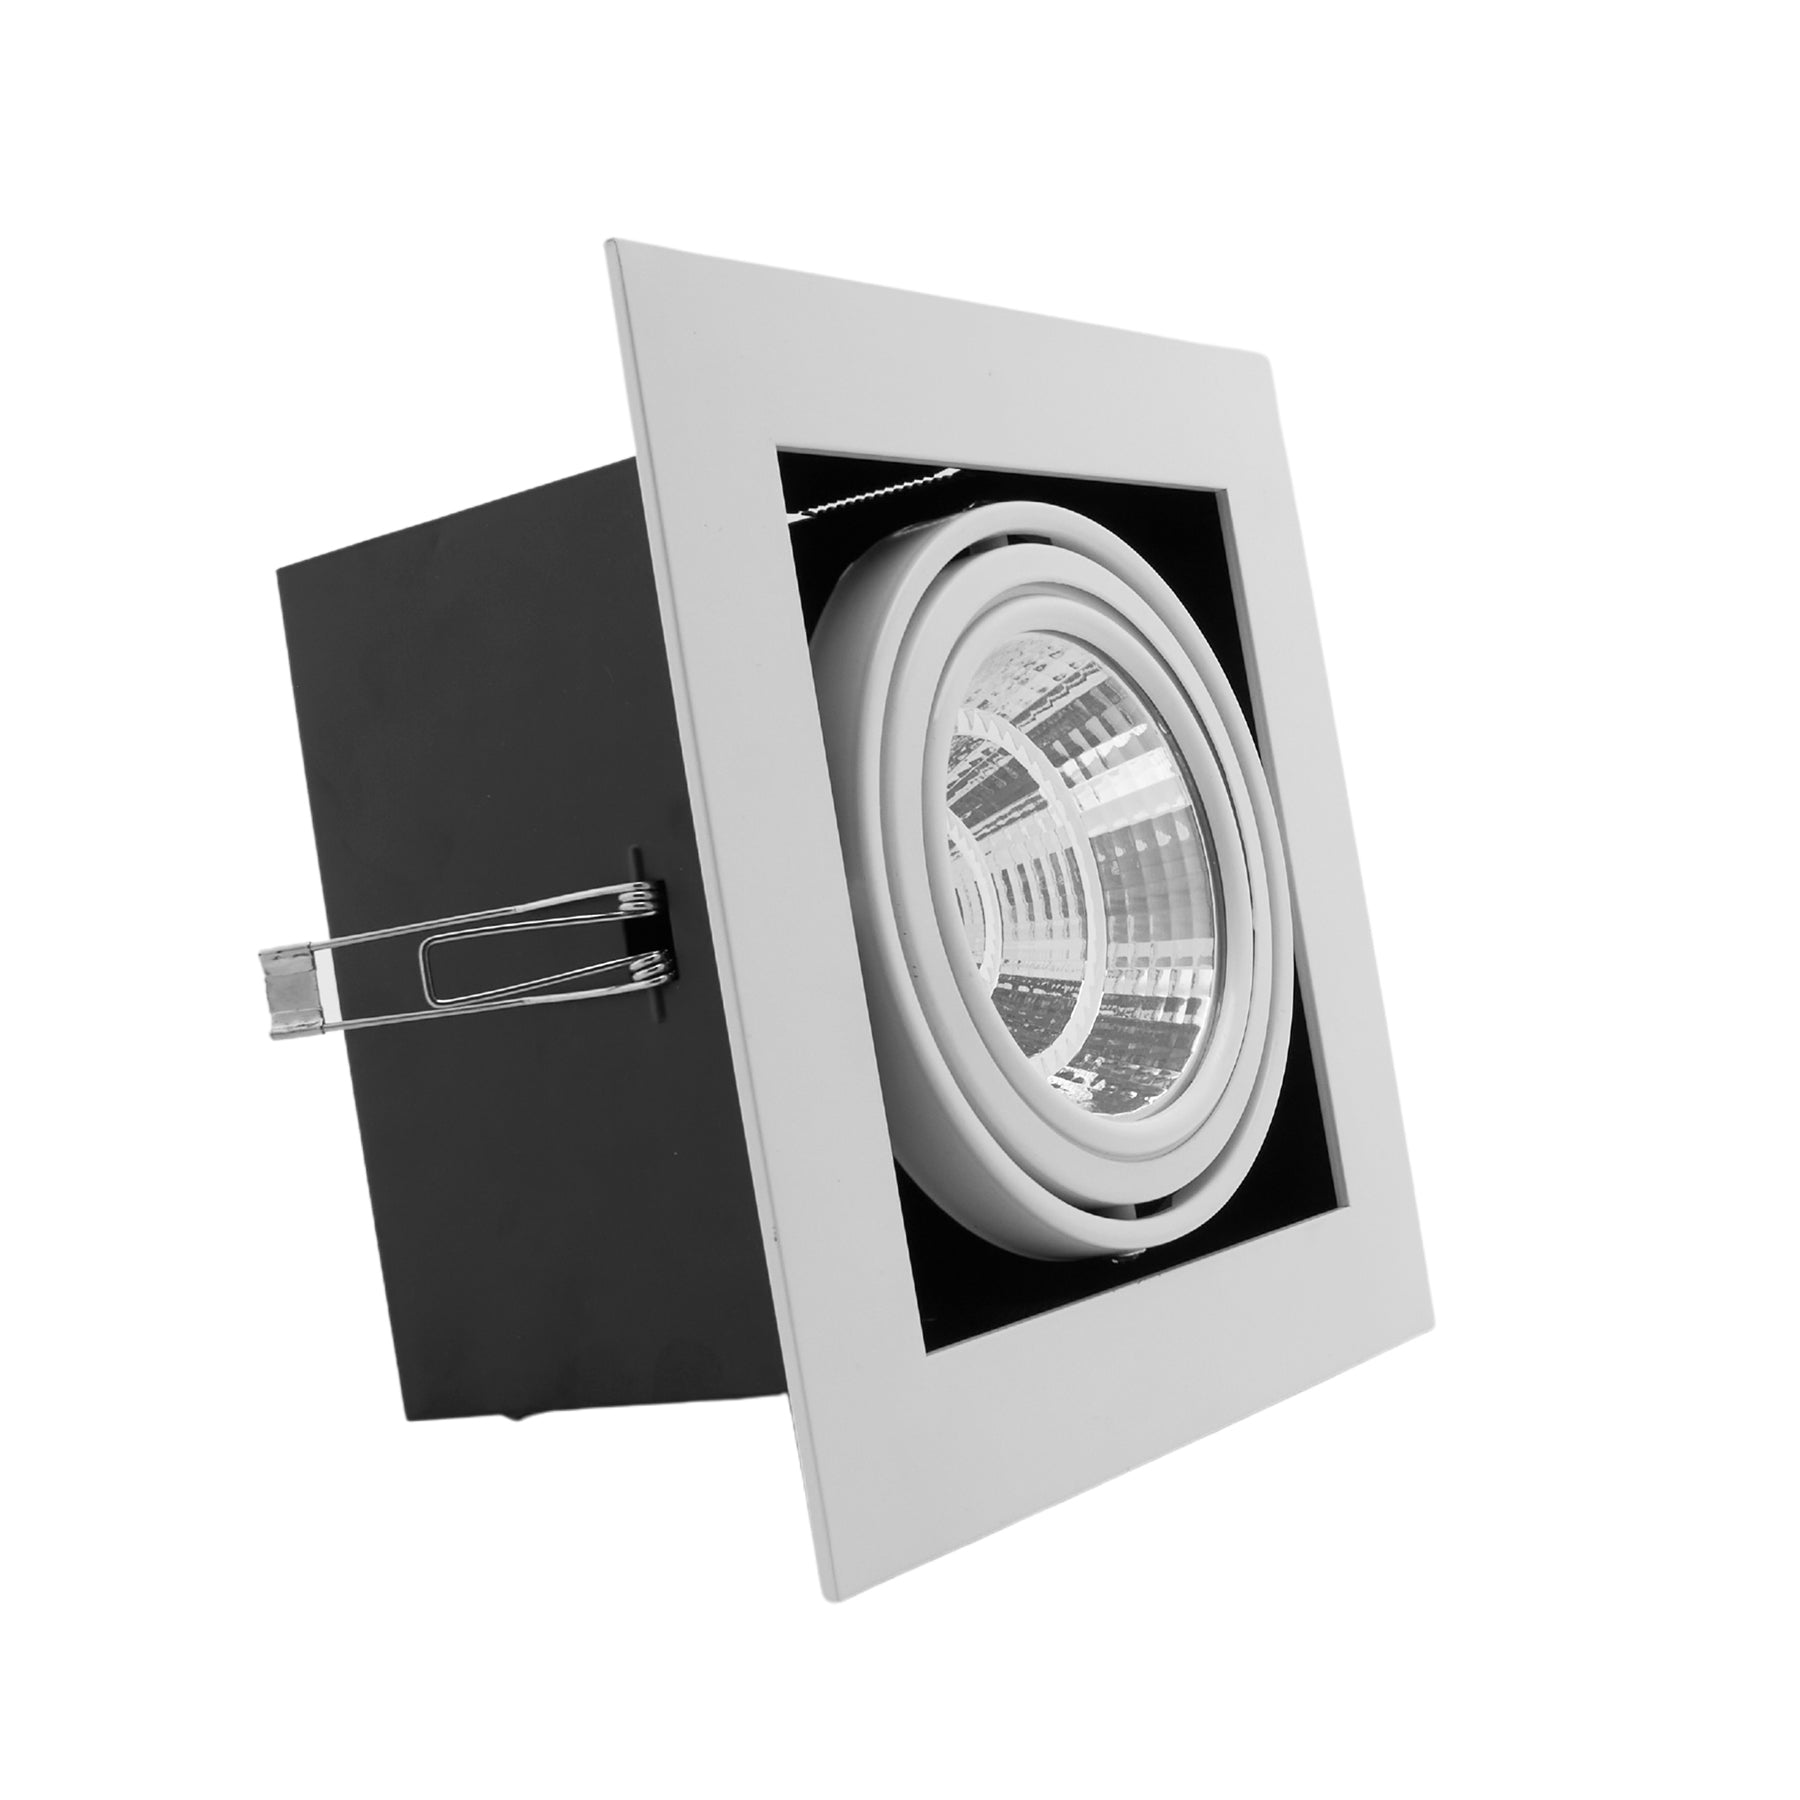 Downlight/Foco Cardan LED 20W 6400K Cuadrado empotrable corte 180mm Marco Blanco